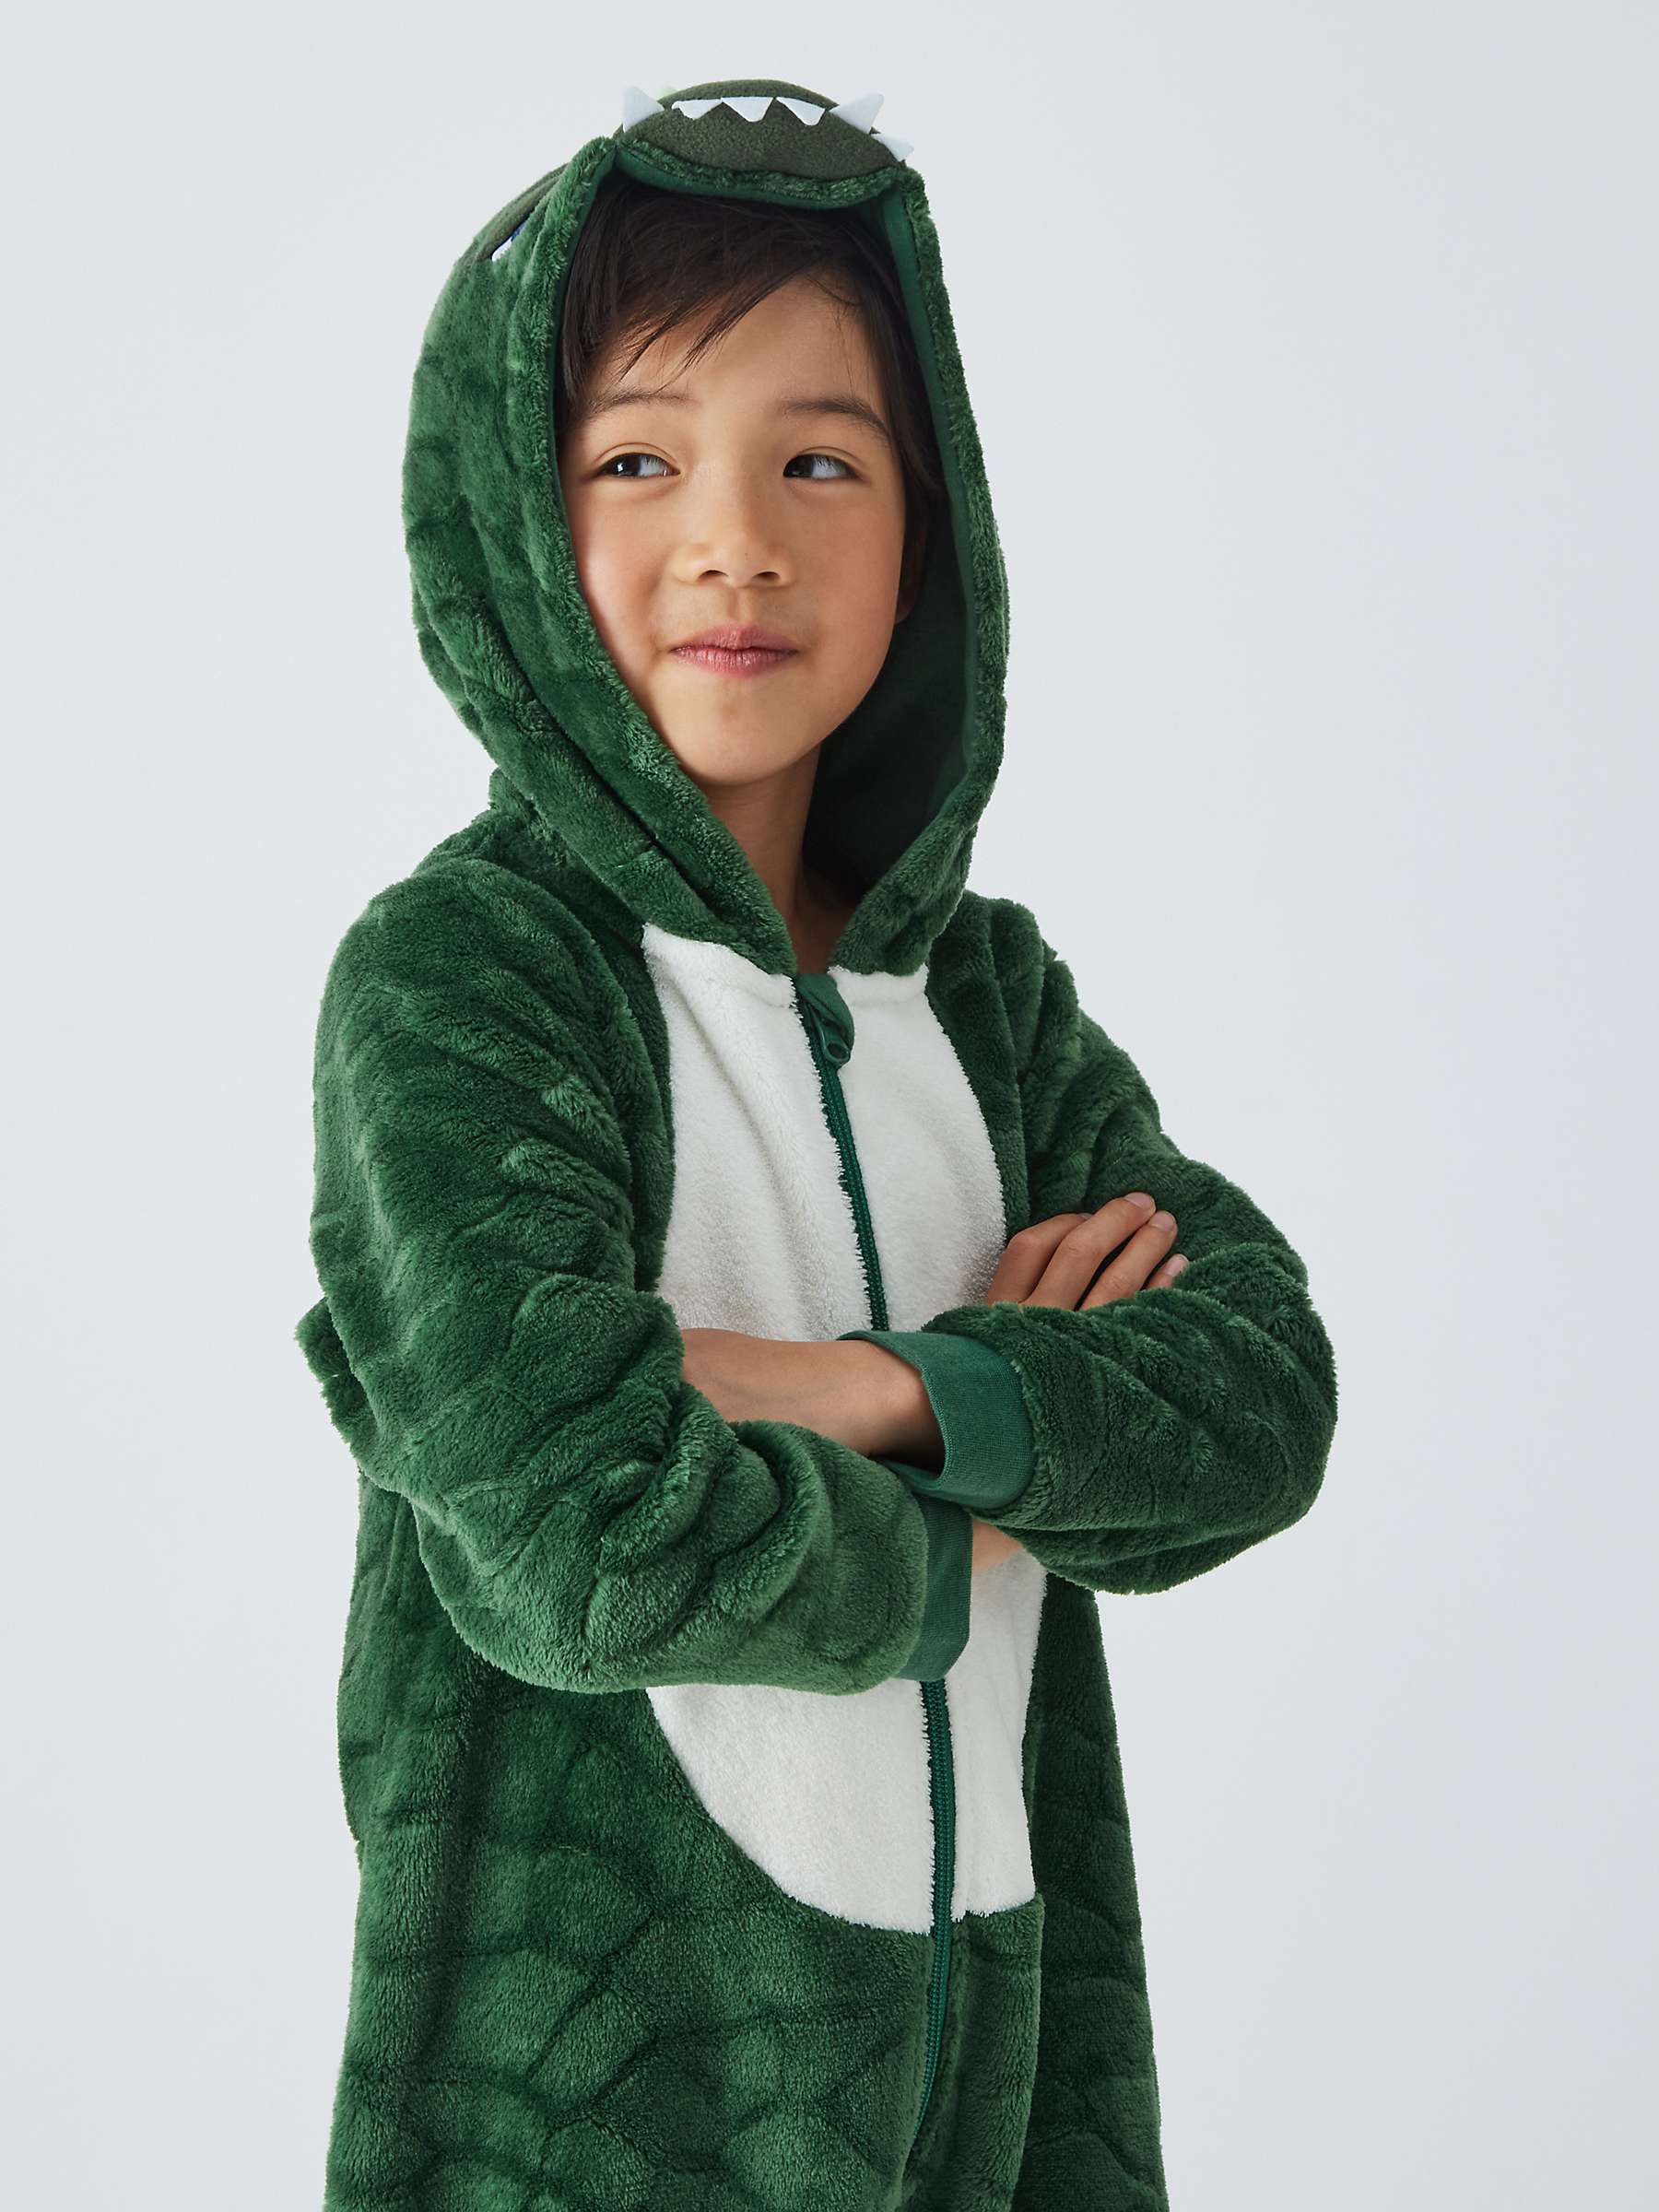 Buy John Lewis Kids' Crocodile Onesie, Green Online at johnlewis.com